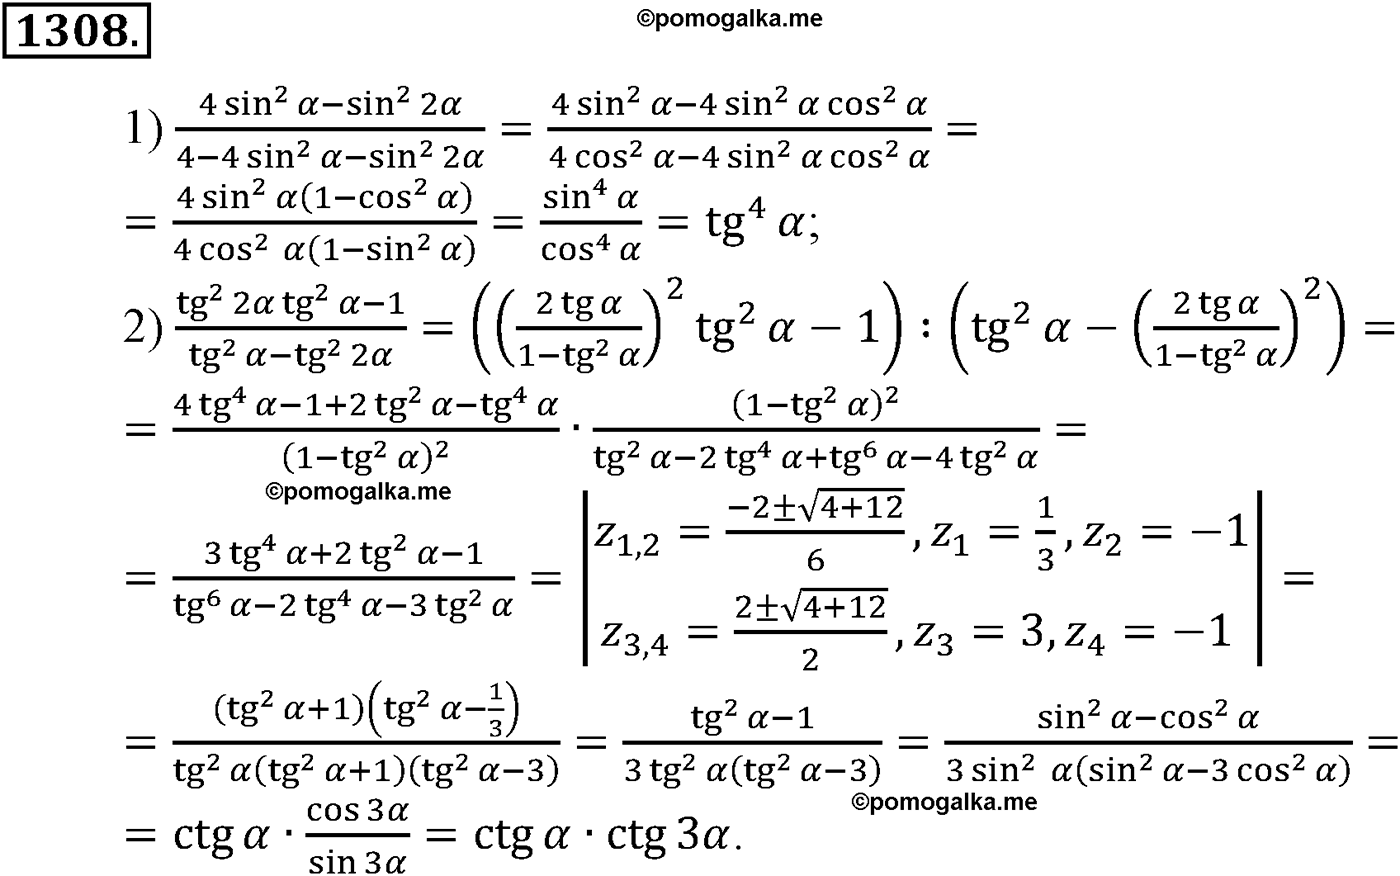 разбор задачи №1308 по алгебре за 10-11 класс из учебника Алимова, Колягина